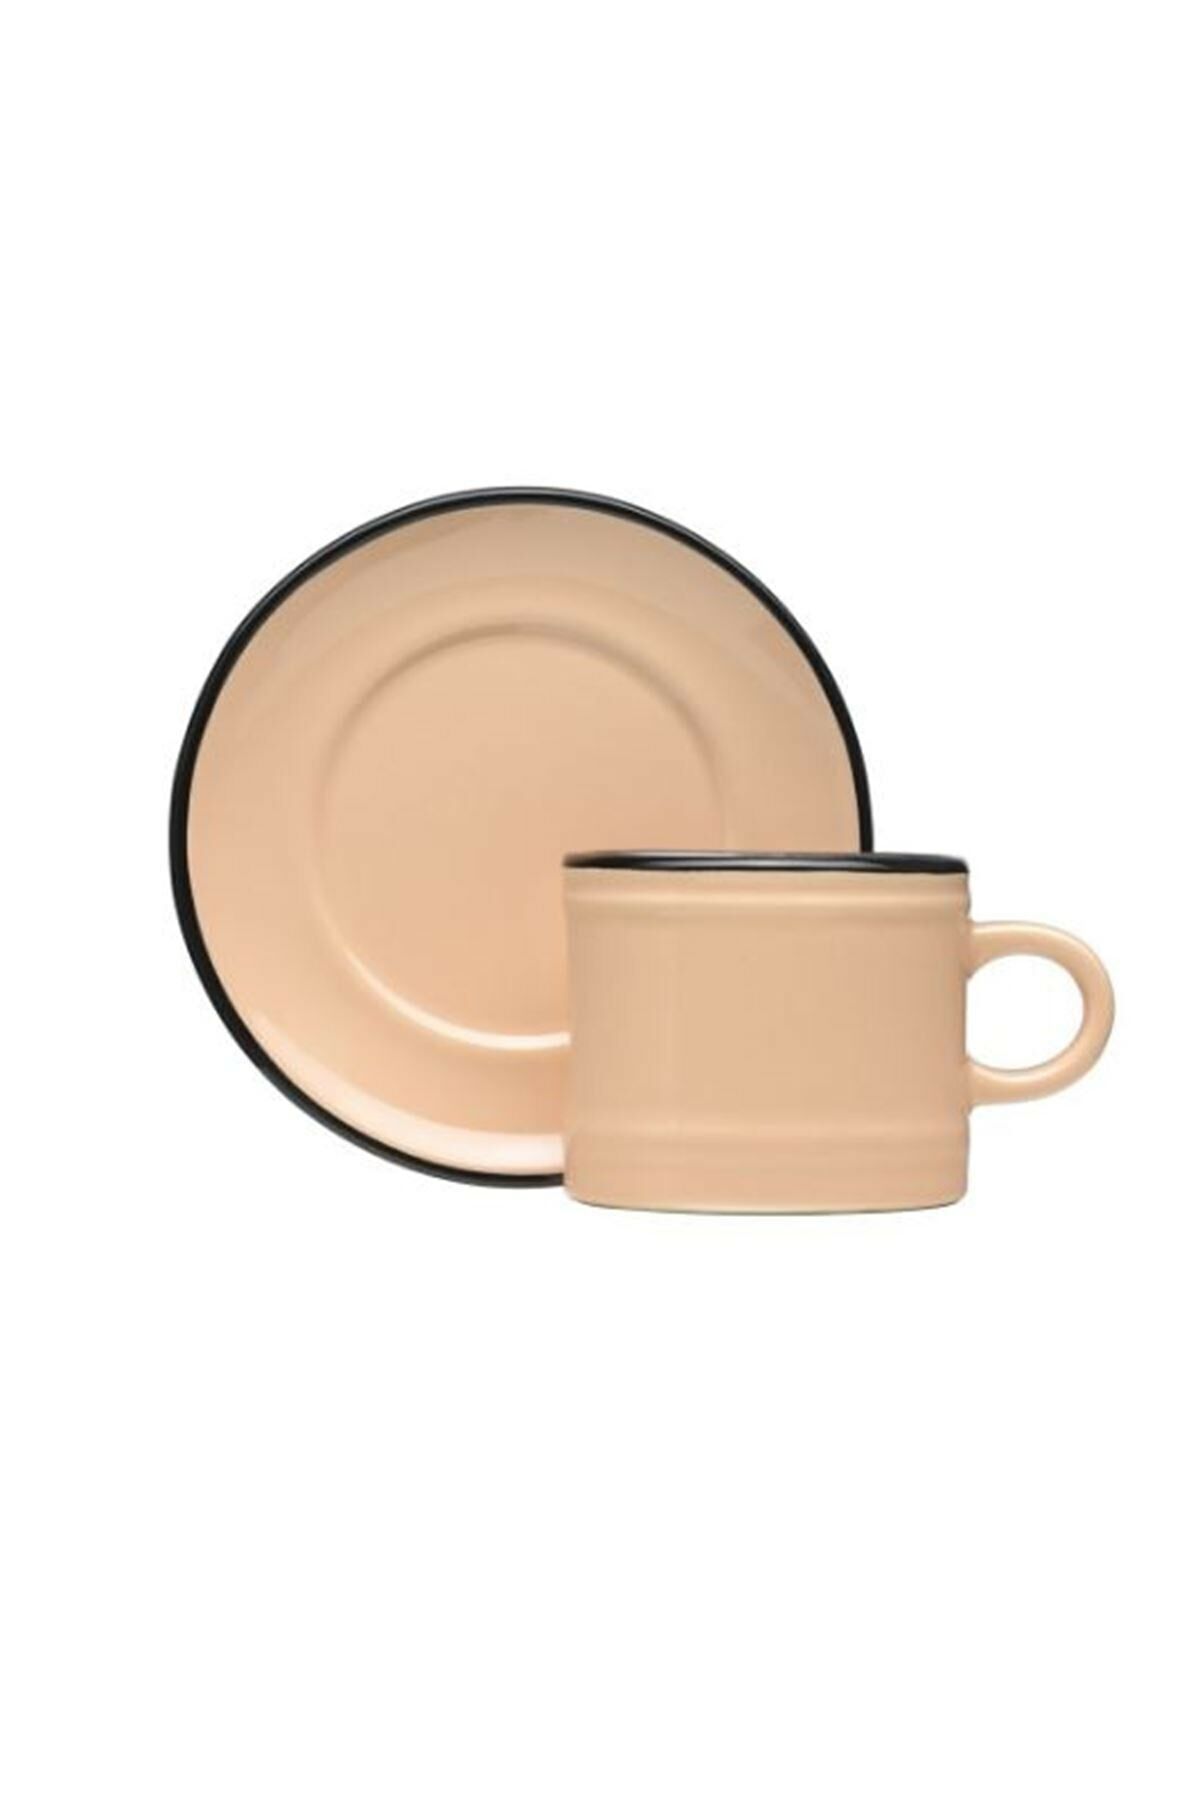 シップス 特別価格MDZF SWEET HOME Ceramic Mug for Office and Home， Coffee Cup Set  with Saucer， 11 Oz好評販売中